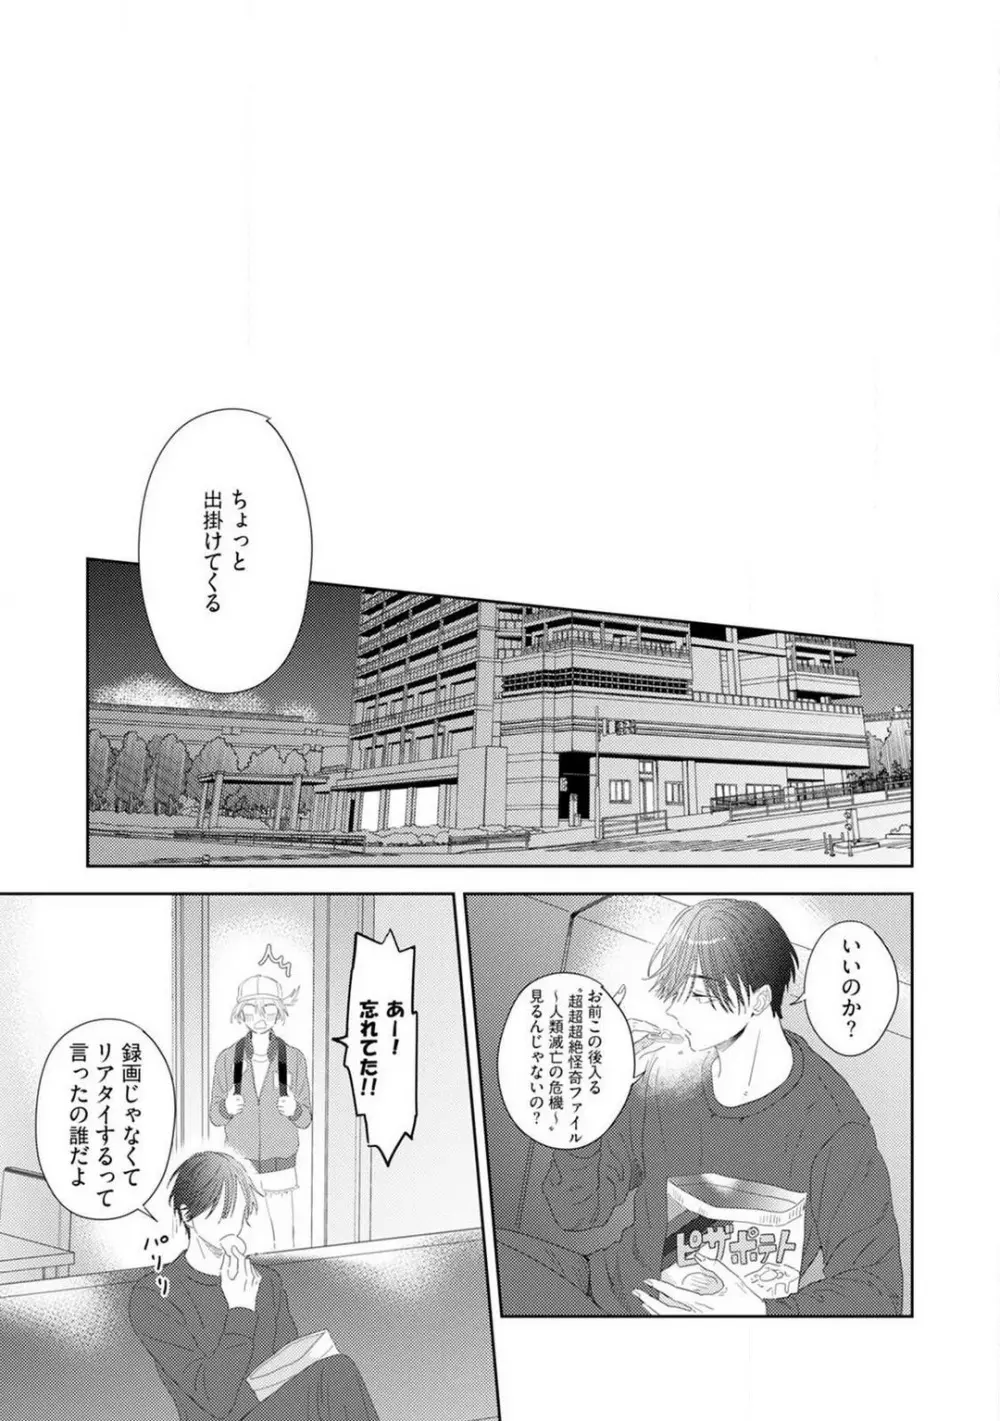 御曹司とヤンキー女のこじらせ恋 1-6 133ページ